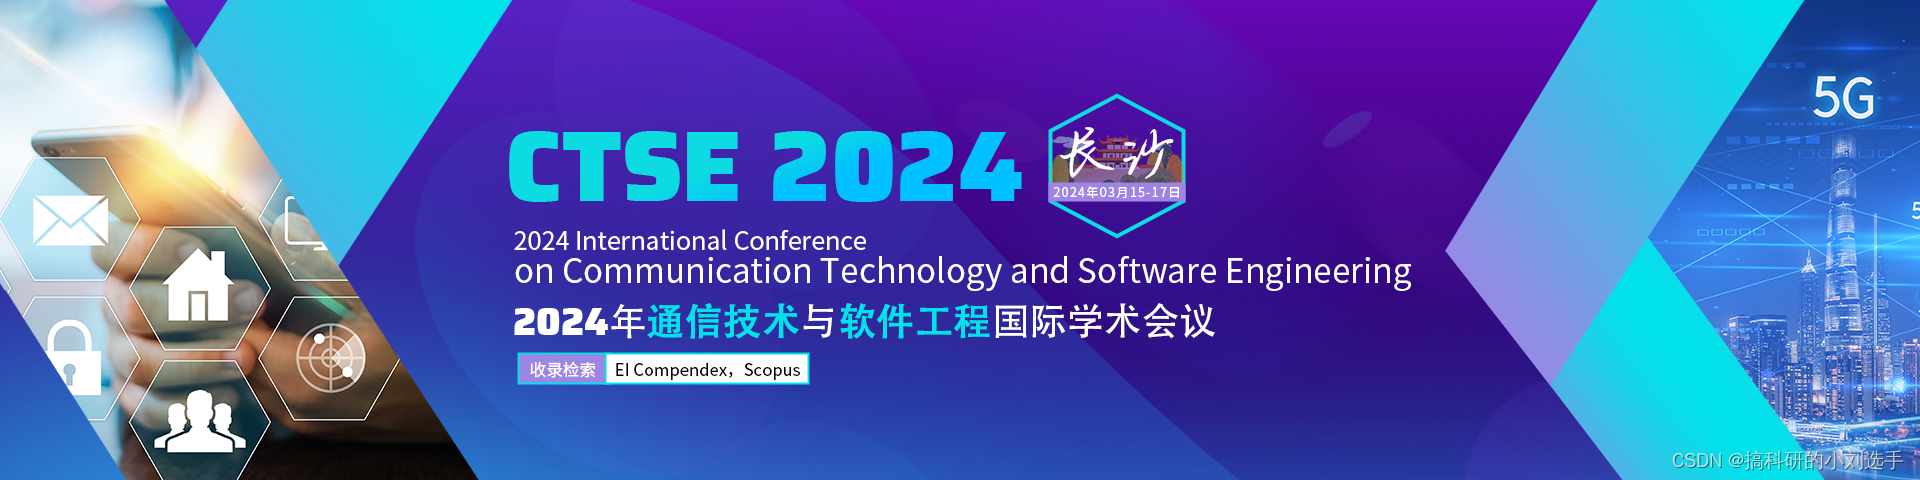 软件工程-【EI会议征稿通知】2024年通信技术与软件工程国际学术会议 (CTSE 2024)